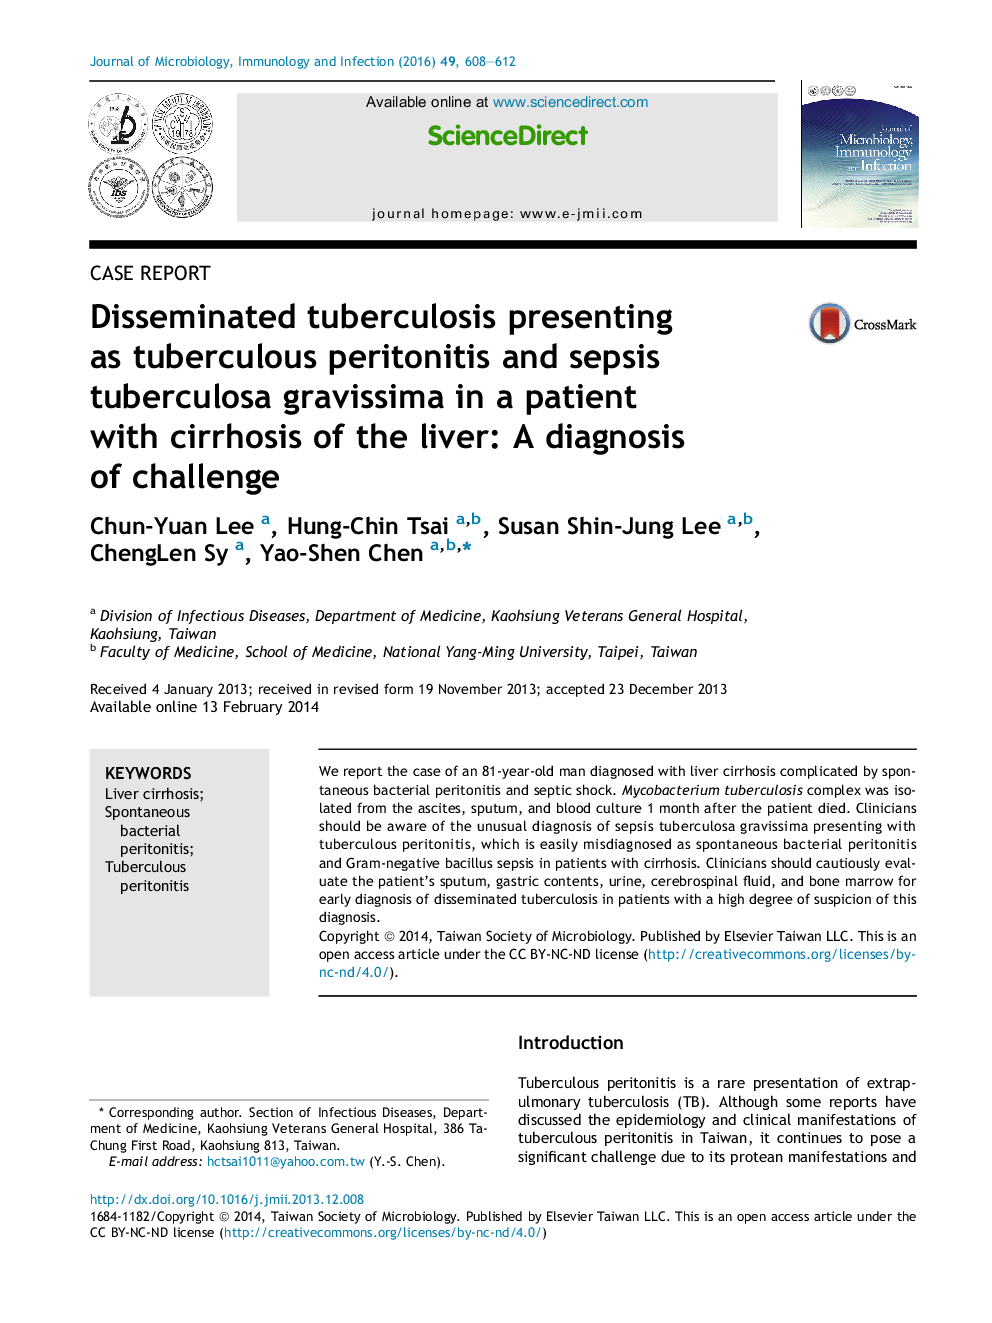 ارائه سل ریوی منتشر شده به عنوان پریتونیت سل و Sepsis tuberculosa gravissima در بیمار مبتلا به سیروز کبد: تشخیص چالش